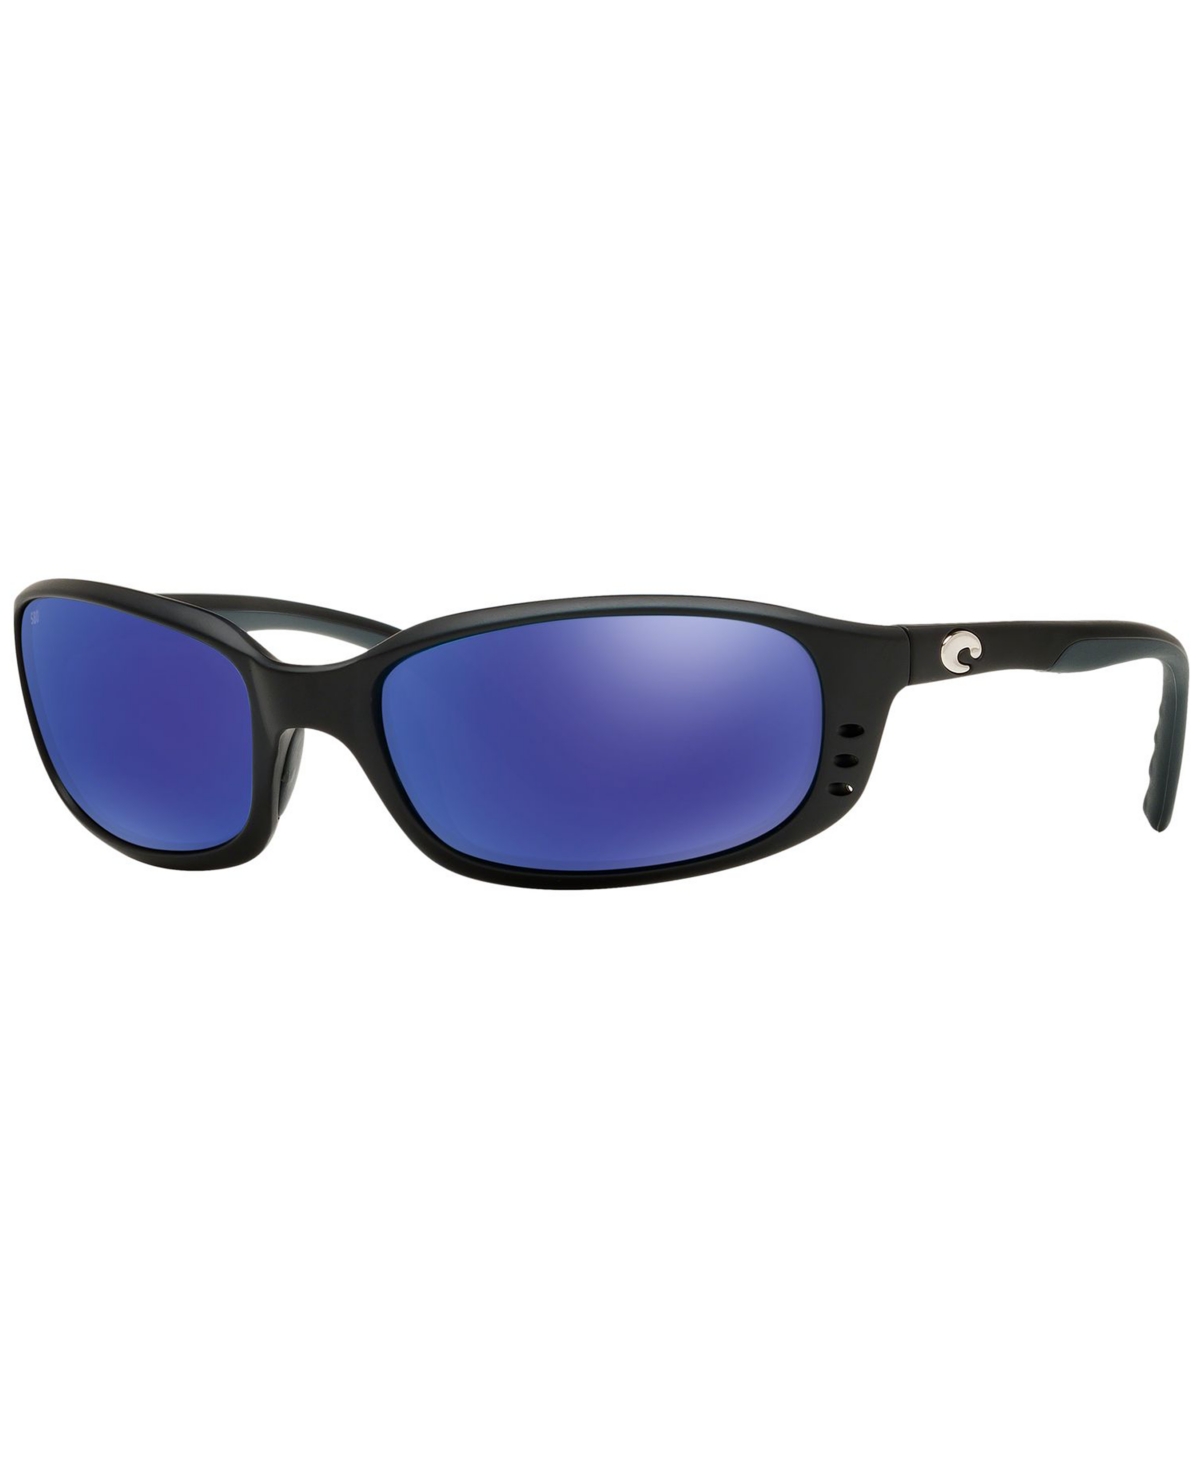 Costa Del Mar Polarized Sunglasses, Brinep In Black Matte,blue Polar